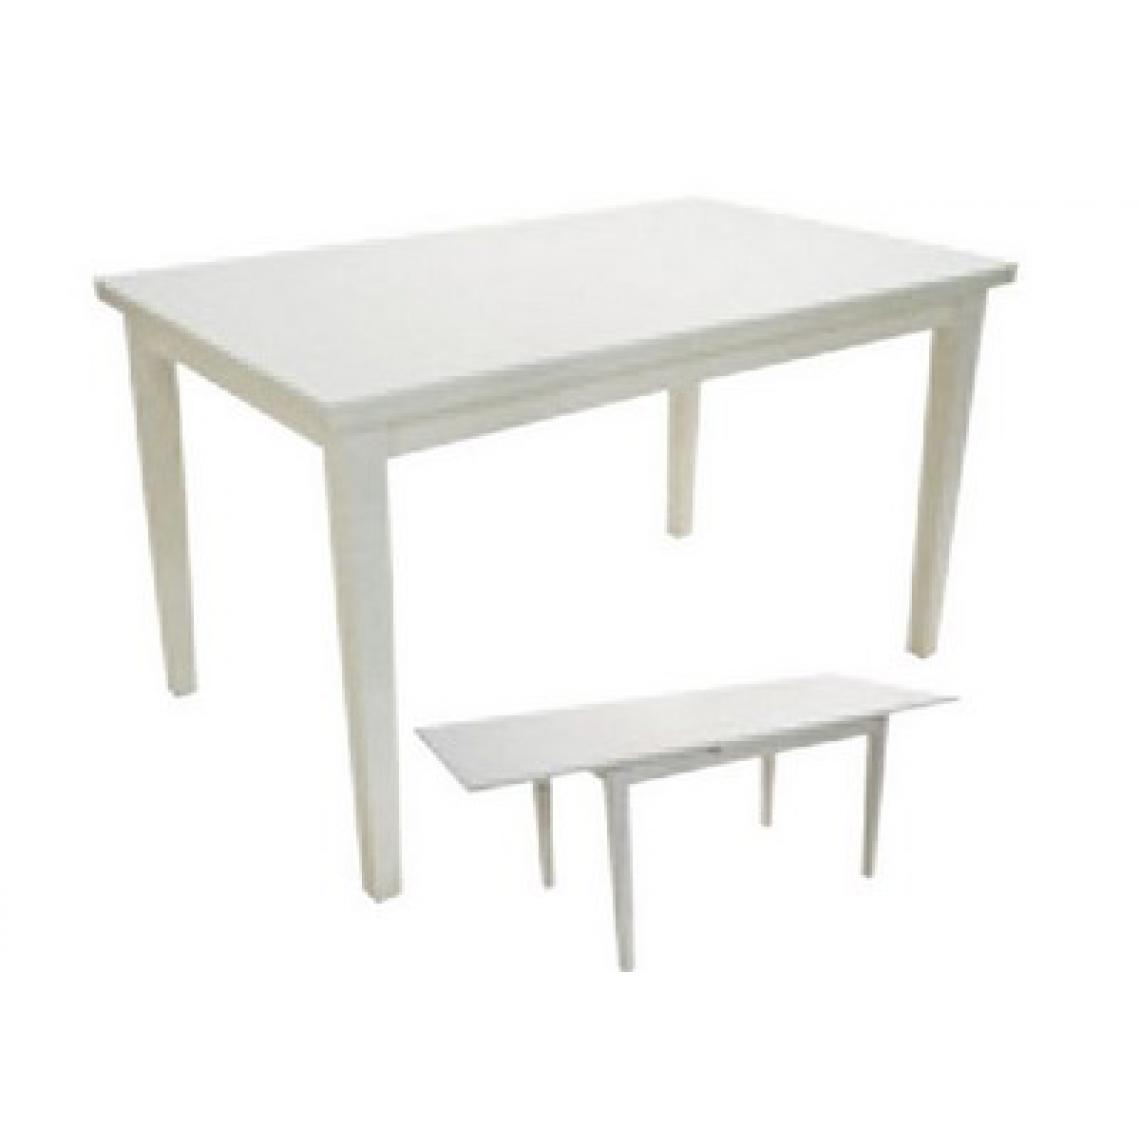 Alter - Table de salle à manger extensible, Table moderne avec rallonges, Console extensible, cm 80x130 / 210h76, Couleur frêne blanc - Tables à manger